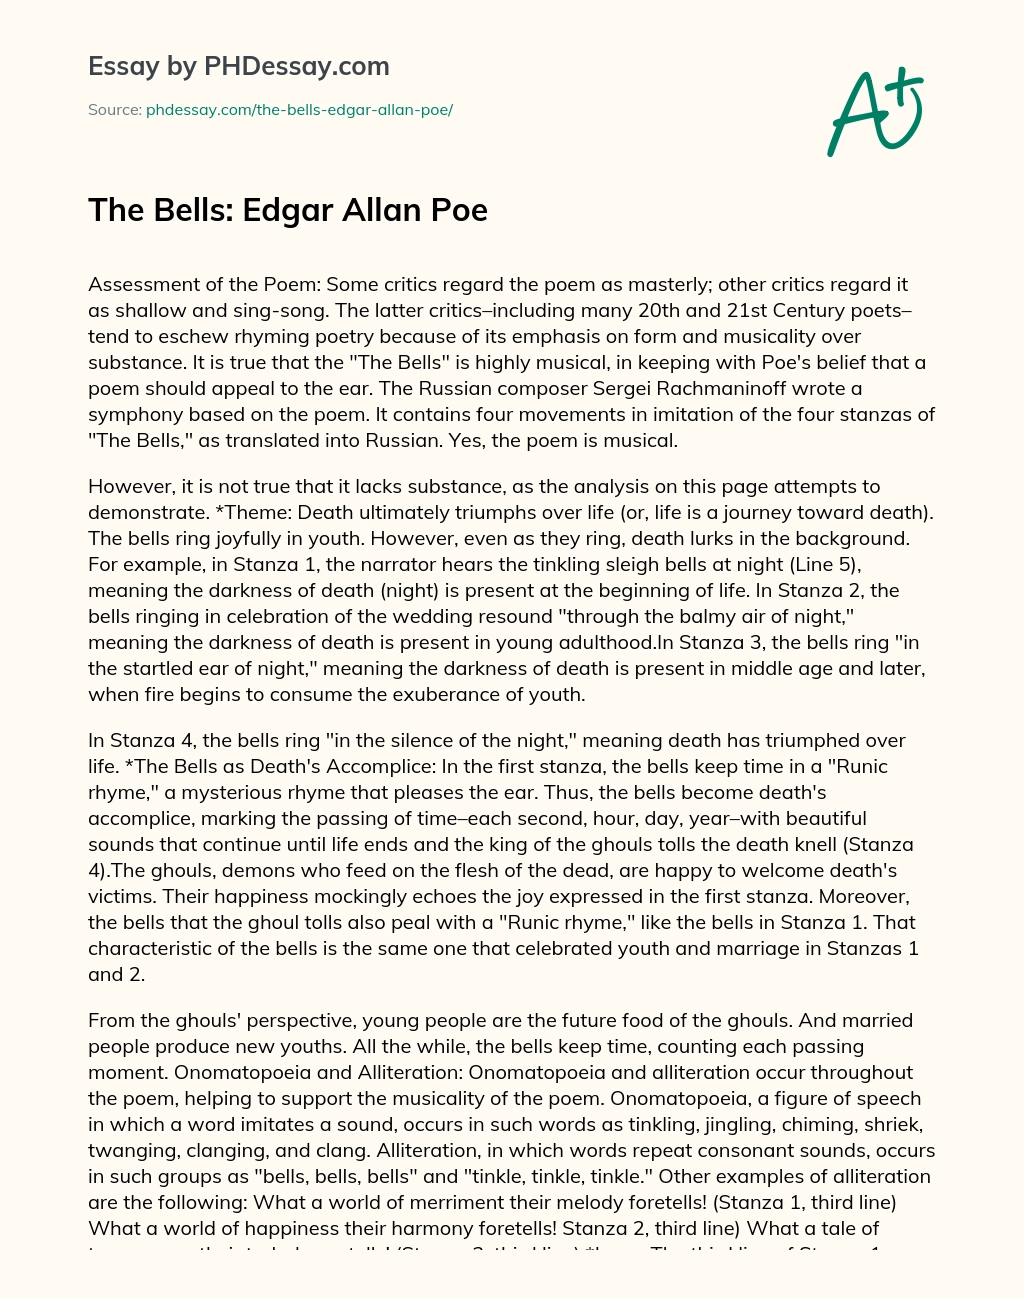 The Bells: Edgar Allan Poe essay